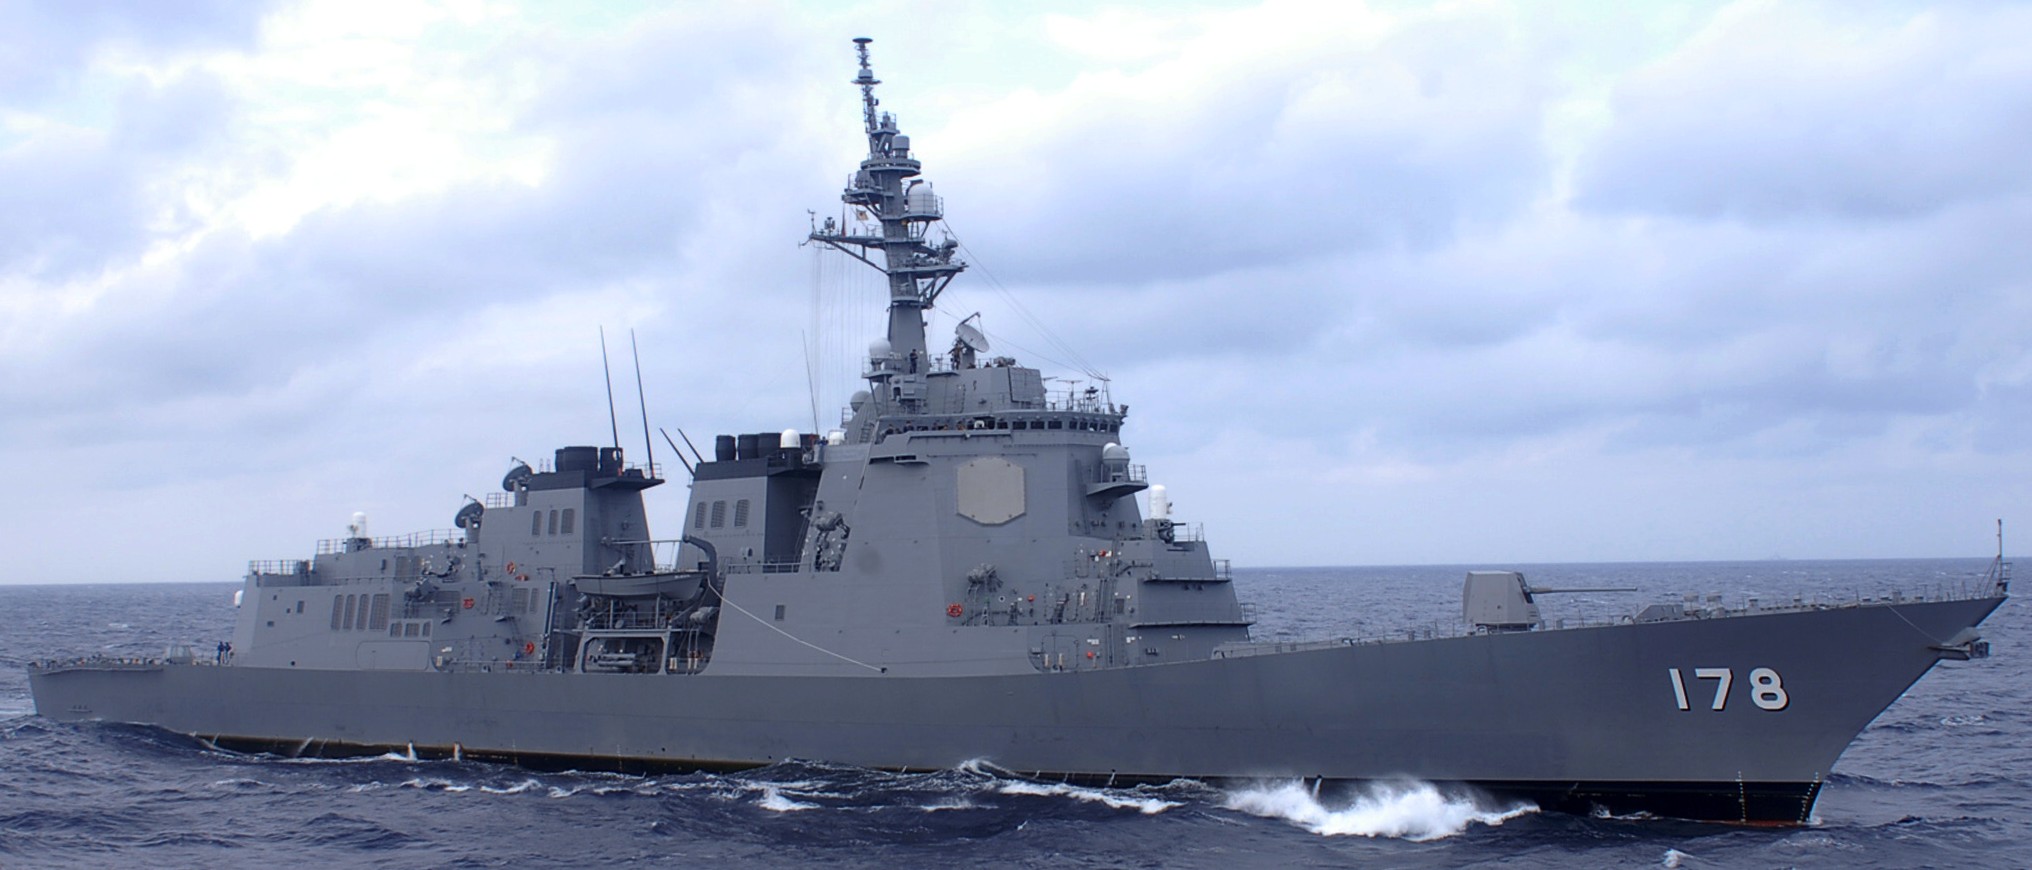 ddg-178 jds ashigara atago class guided missile destroyer japan maritime self defense force jmsdf 34